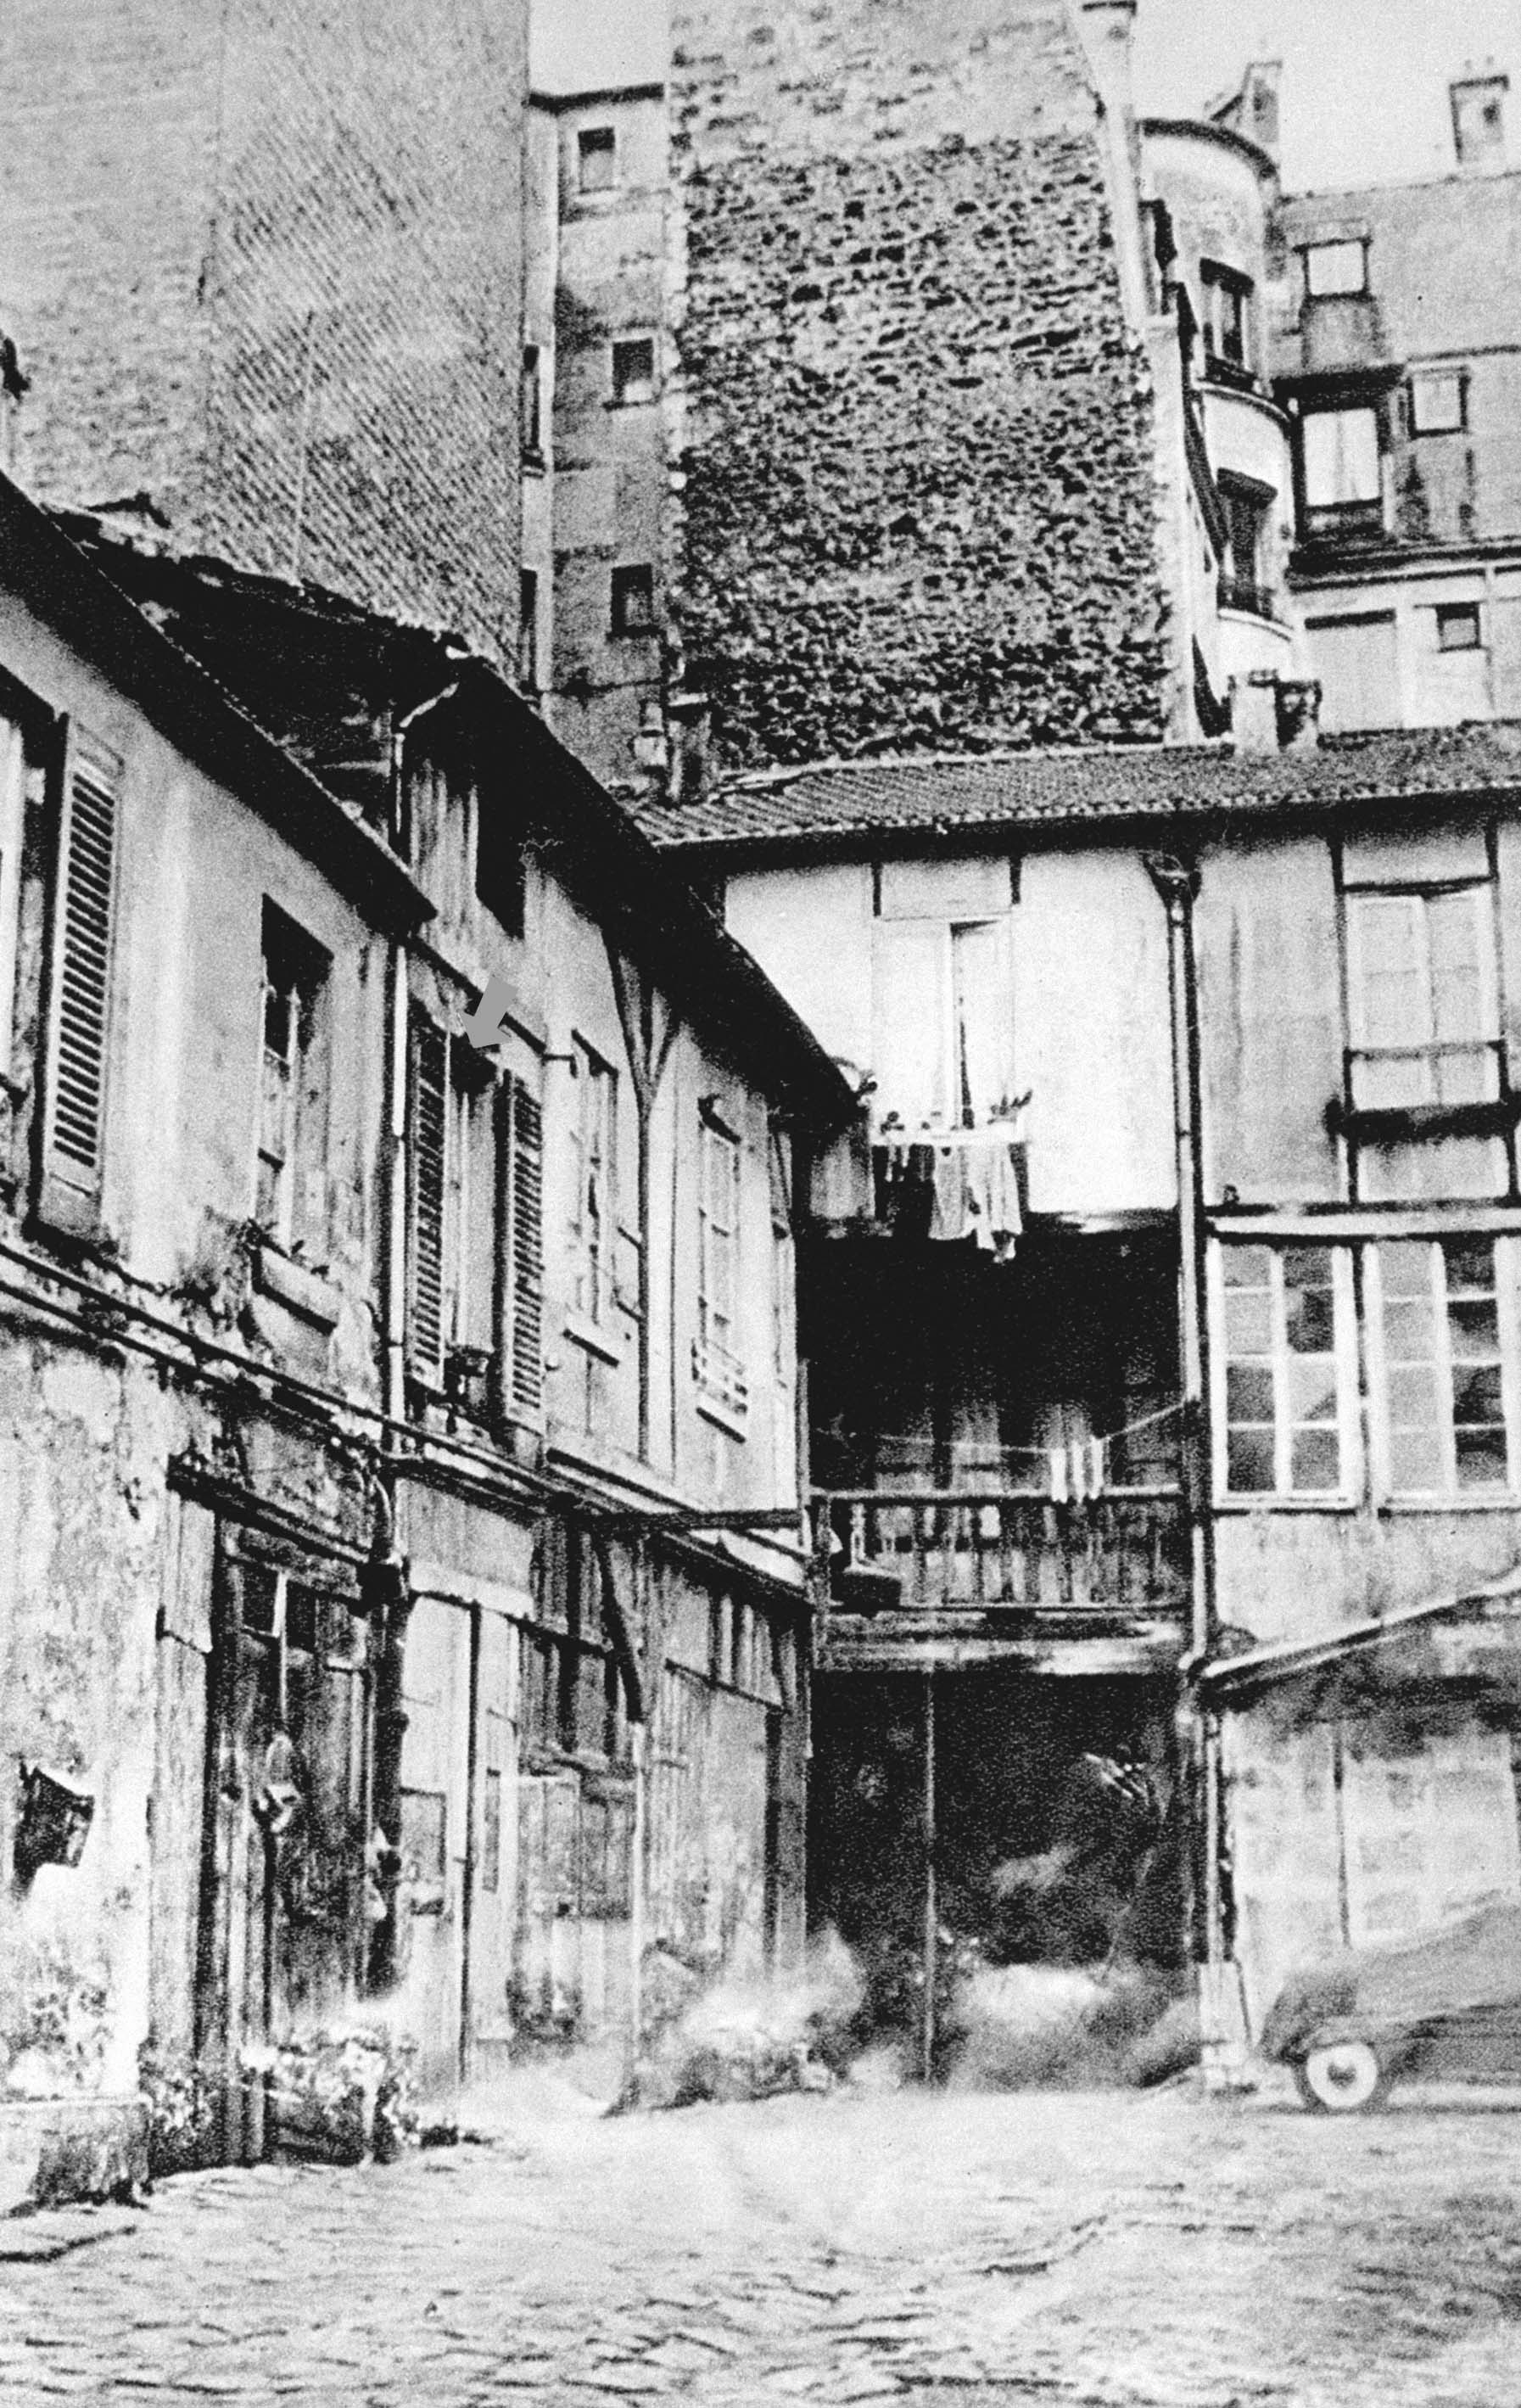 Ngôi nhà số 9 ngõ Compoint (Paris, Pháp) năm 1921, nơi đây Nguyễn Ái Quốc đã từng sinh sống (1921 - 1923)